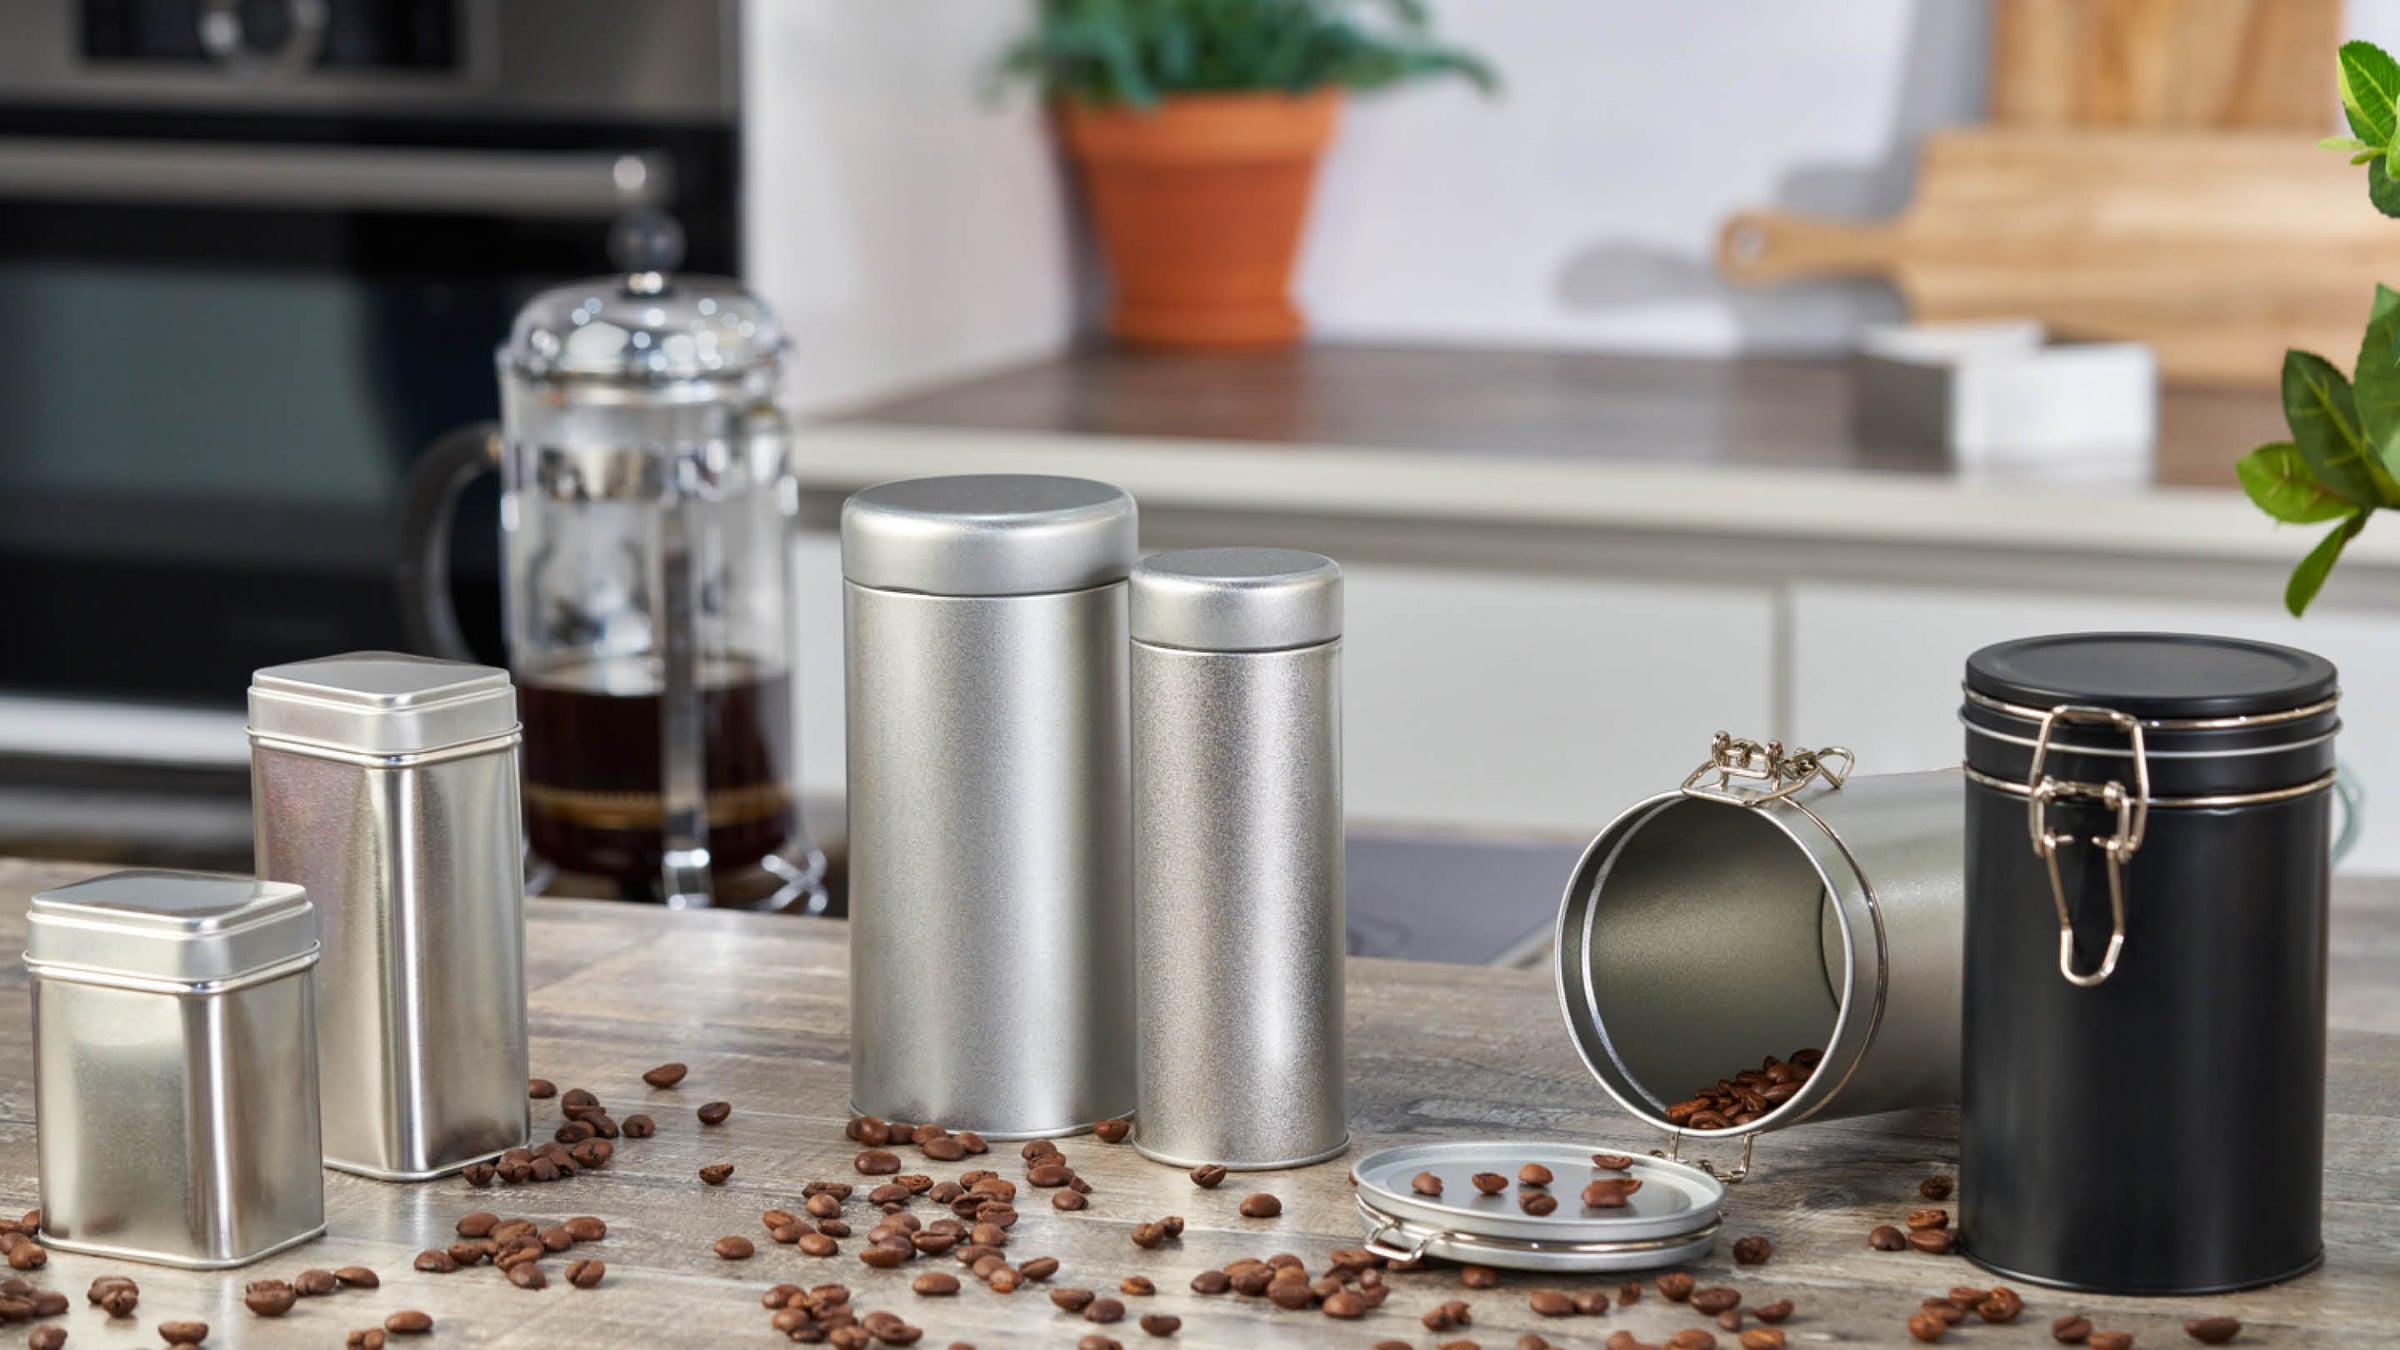 Une gamme d’emballages en métal utilisé pour le café, les épices et les herbes à l’intérieur d’une cuisine.